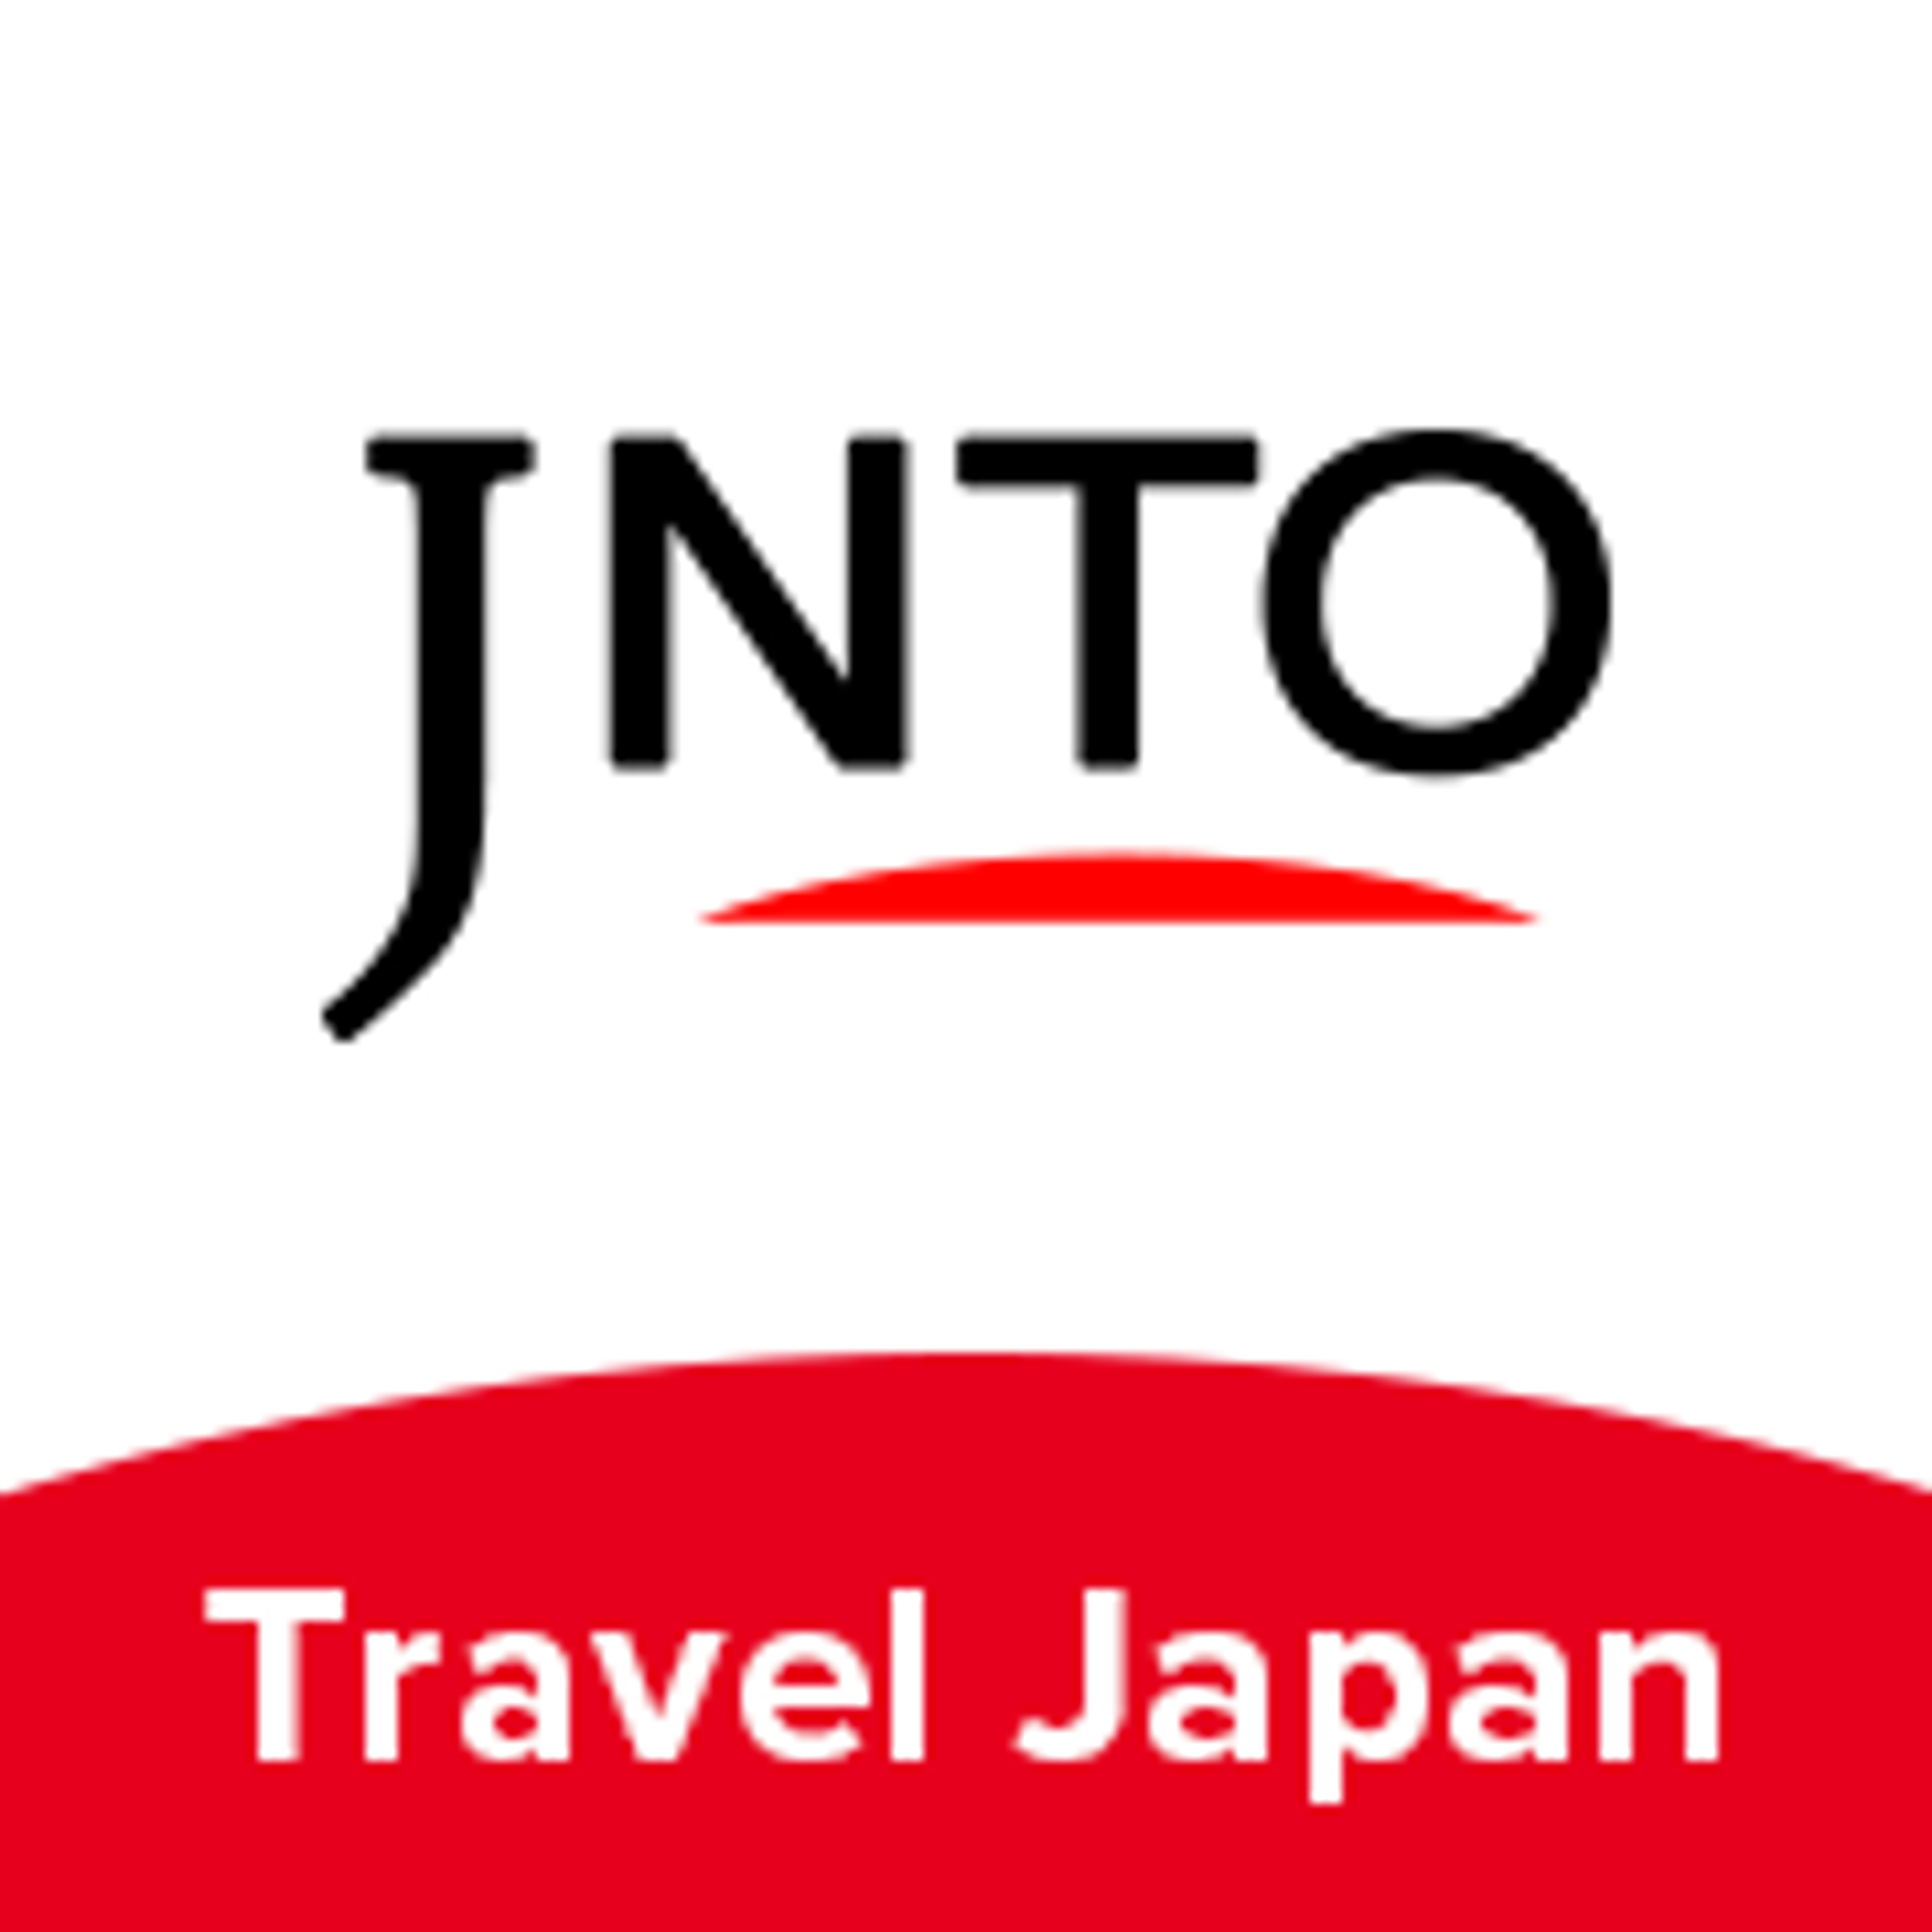 긴잔온천 | Travel Japan - 일본정부관광국(공식 홈페이지)